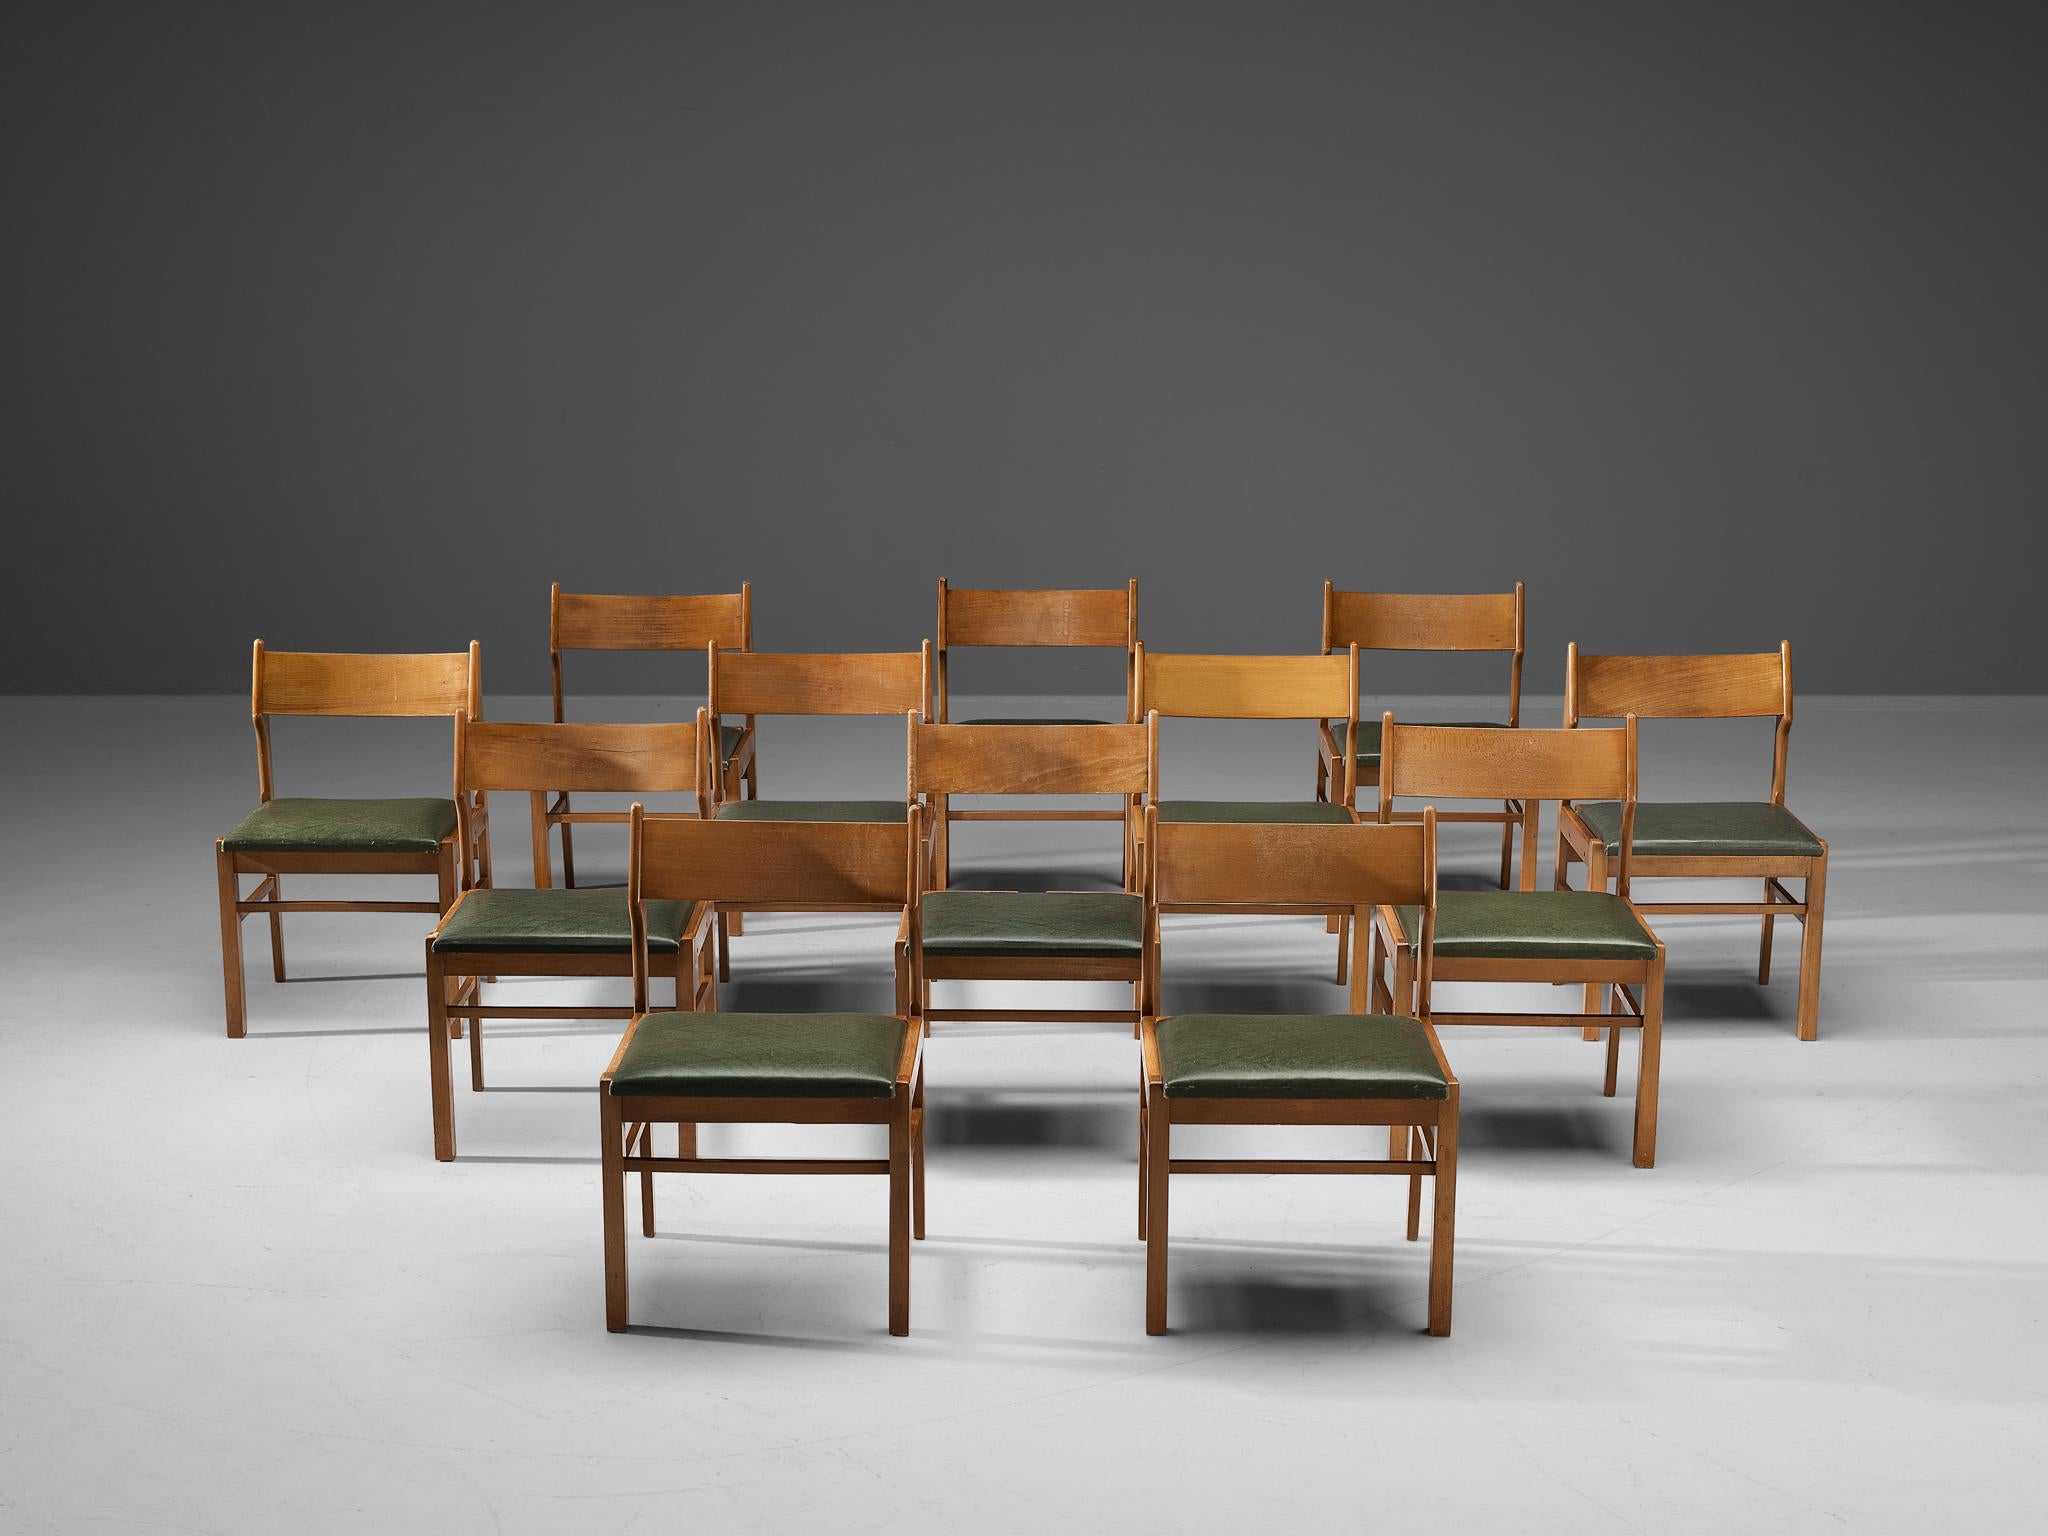 Chaises de salle à manger, bois, simili-cuir vert foncé, Pays-Bas, années 1960. 

Modeste ensemble de douze chaises de salle à manger. Son design présente des lignes claires et une banquette arrière ouverte. Les sièges en similicuir vert foncé